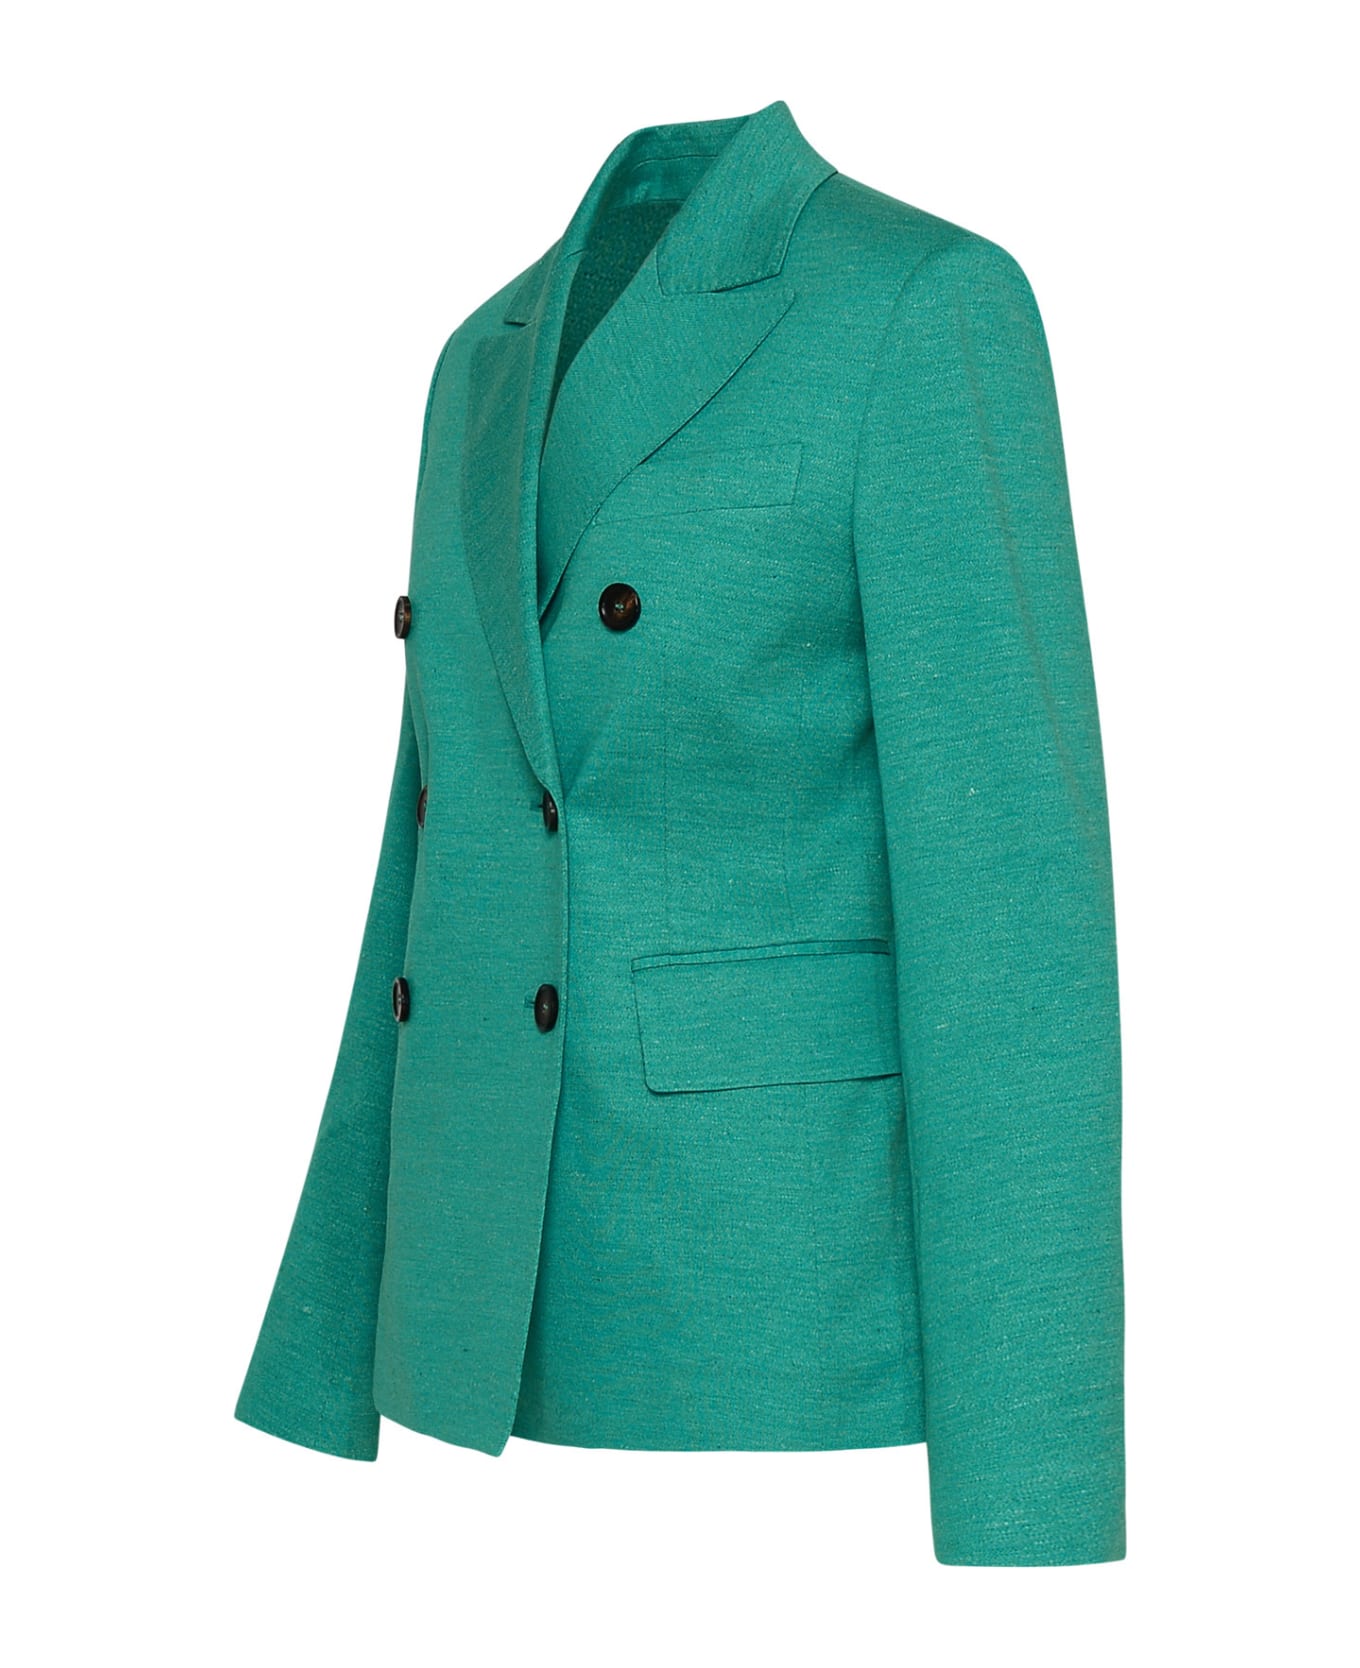 Max Mara Cashmere Green Cotton Blend Zirlo Blazer Jacket - 003 ブレザー